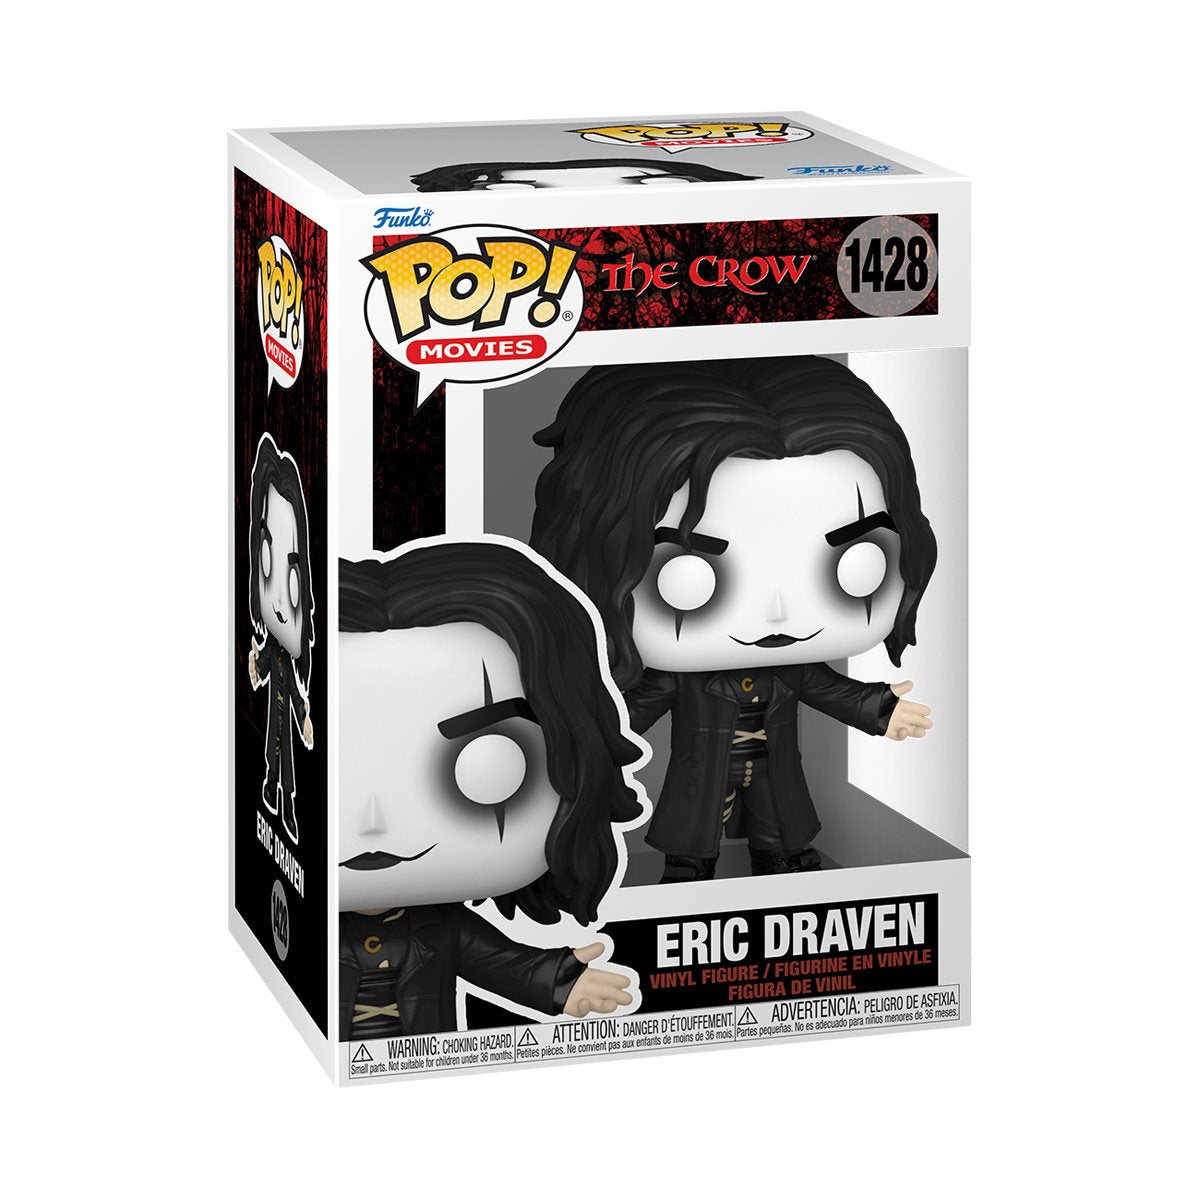 Funko Pop! The Crow - Eric Draven